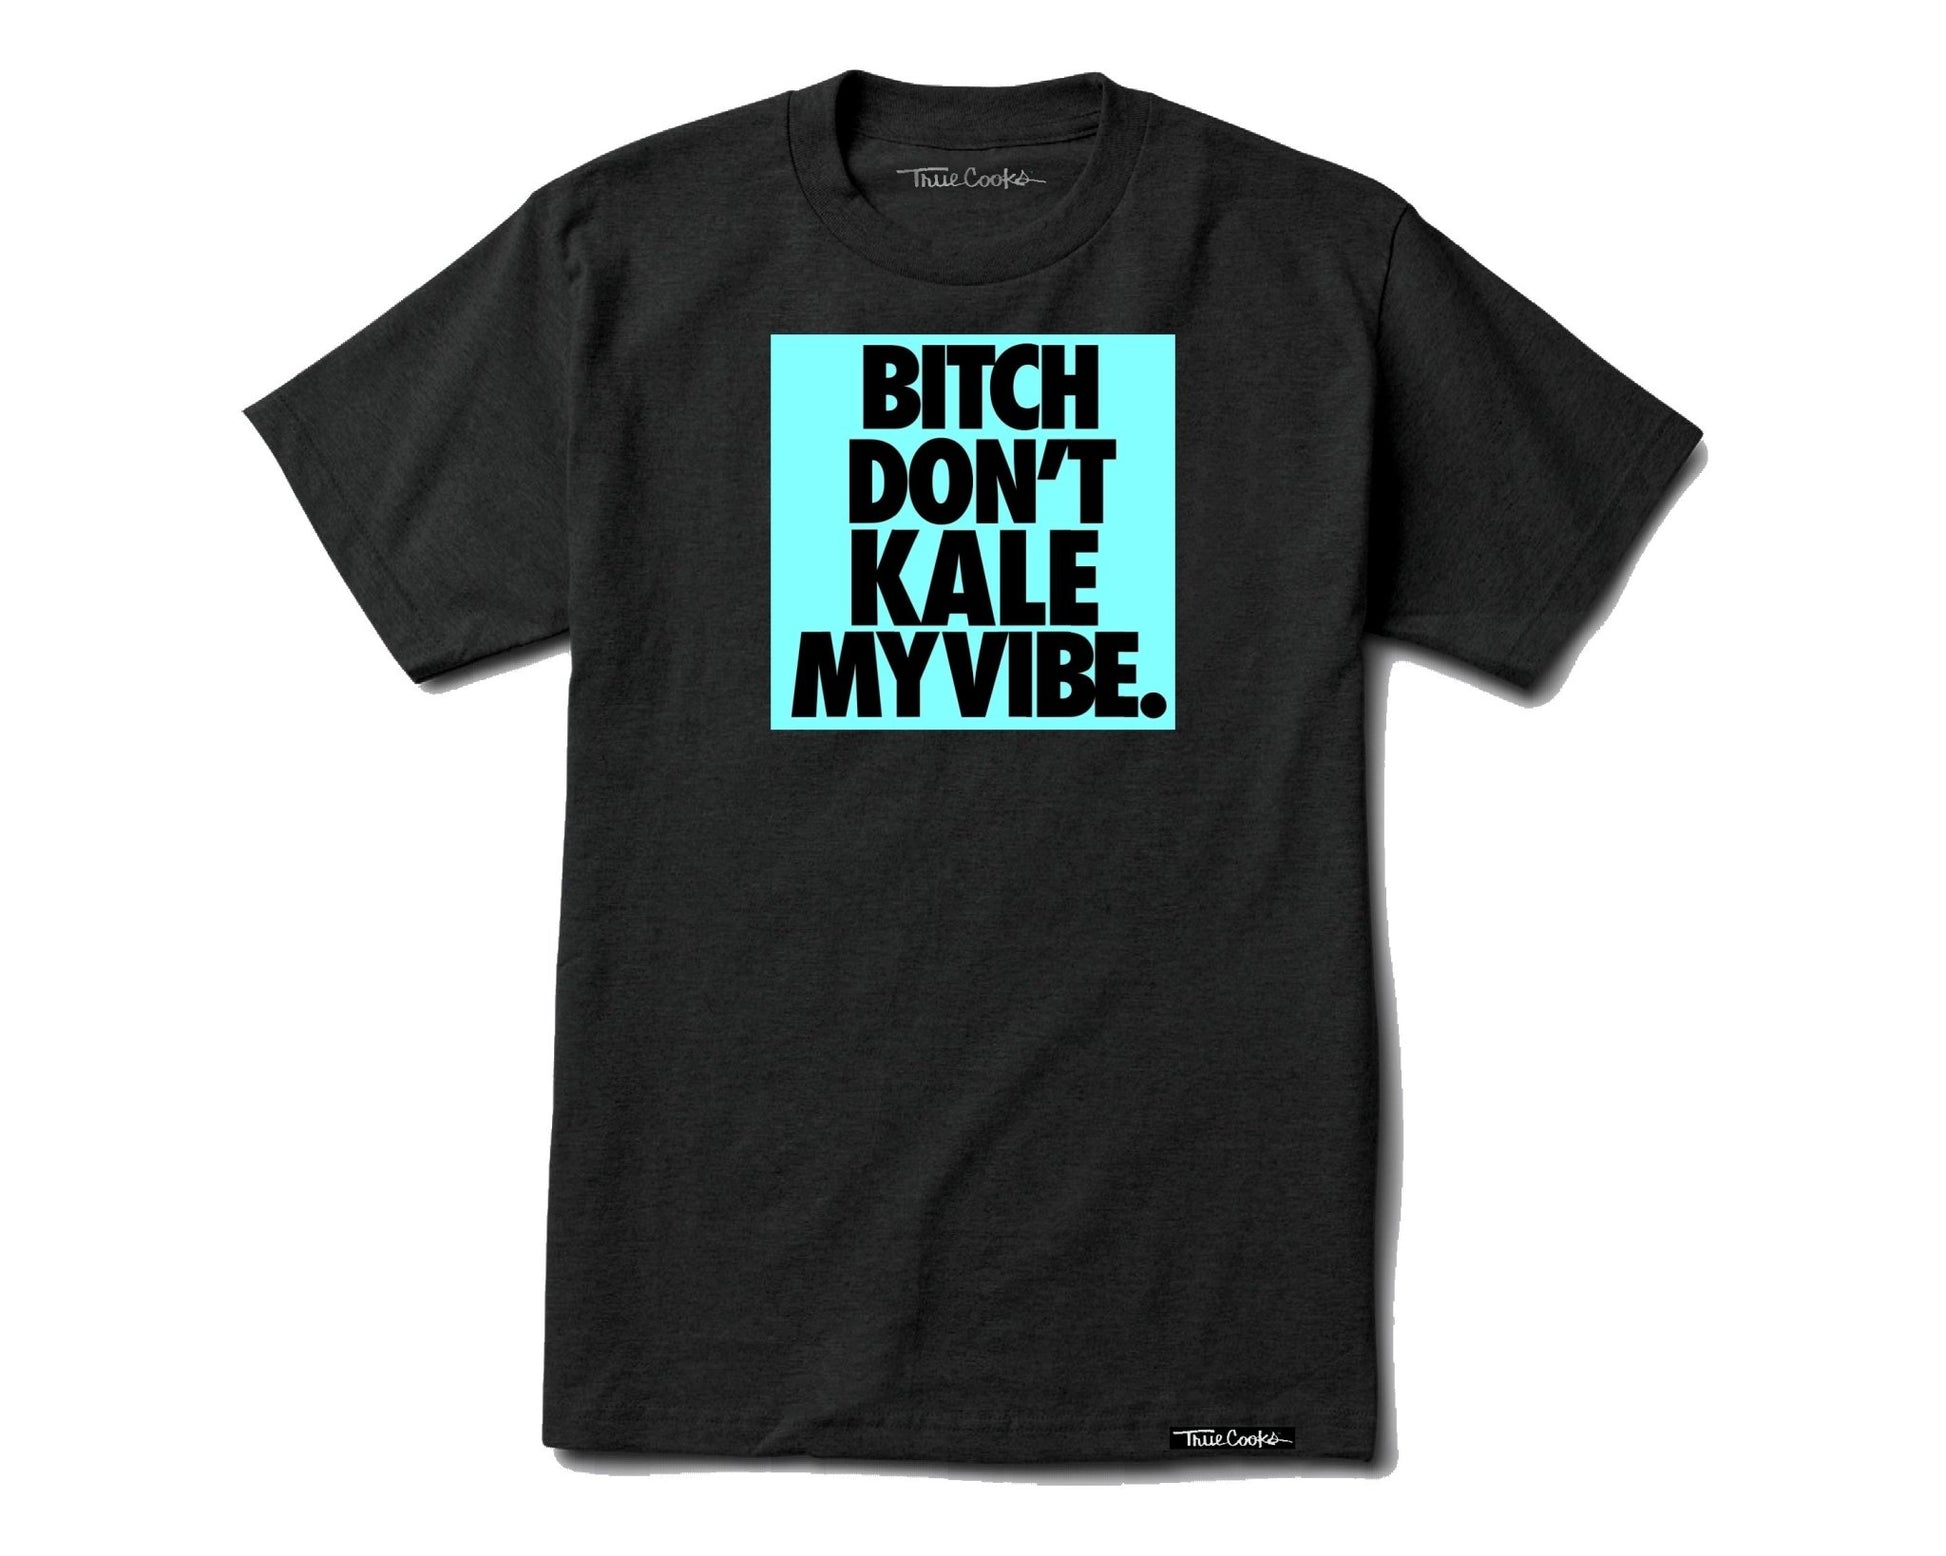 Don't Kale My Vibe - TrueCooks